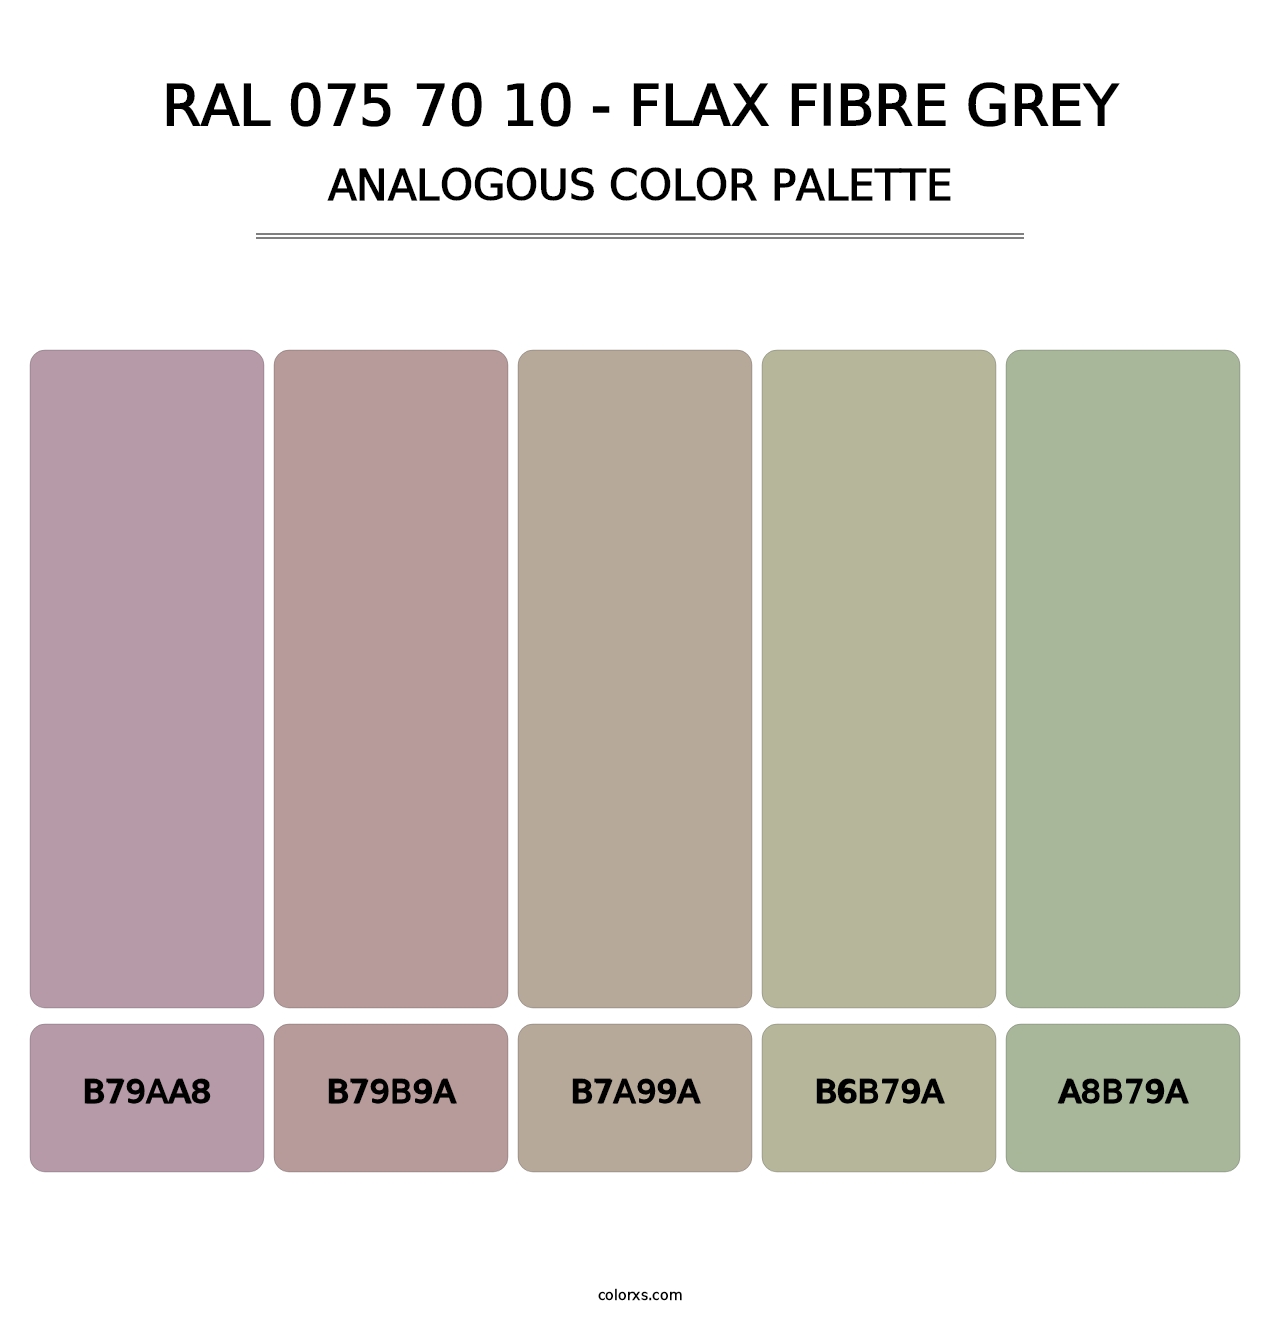 RAL 075 70 10 - Flax Fibre Grey - Analogous Color Palette